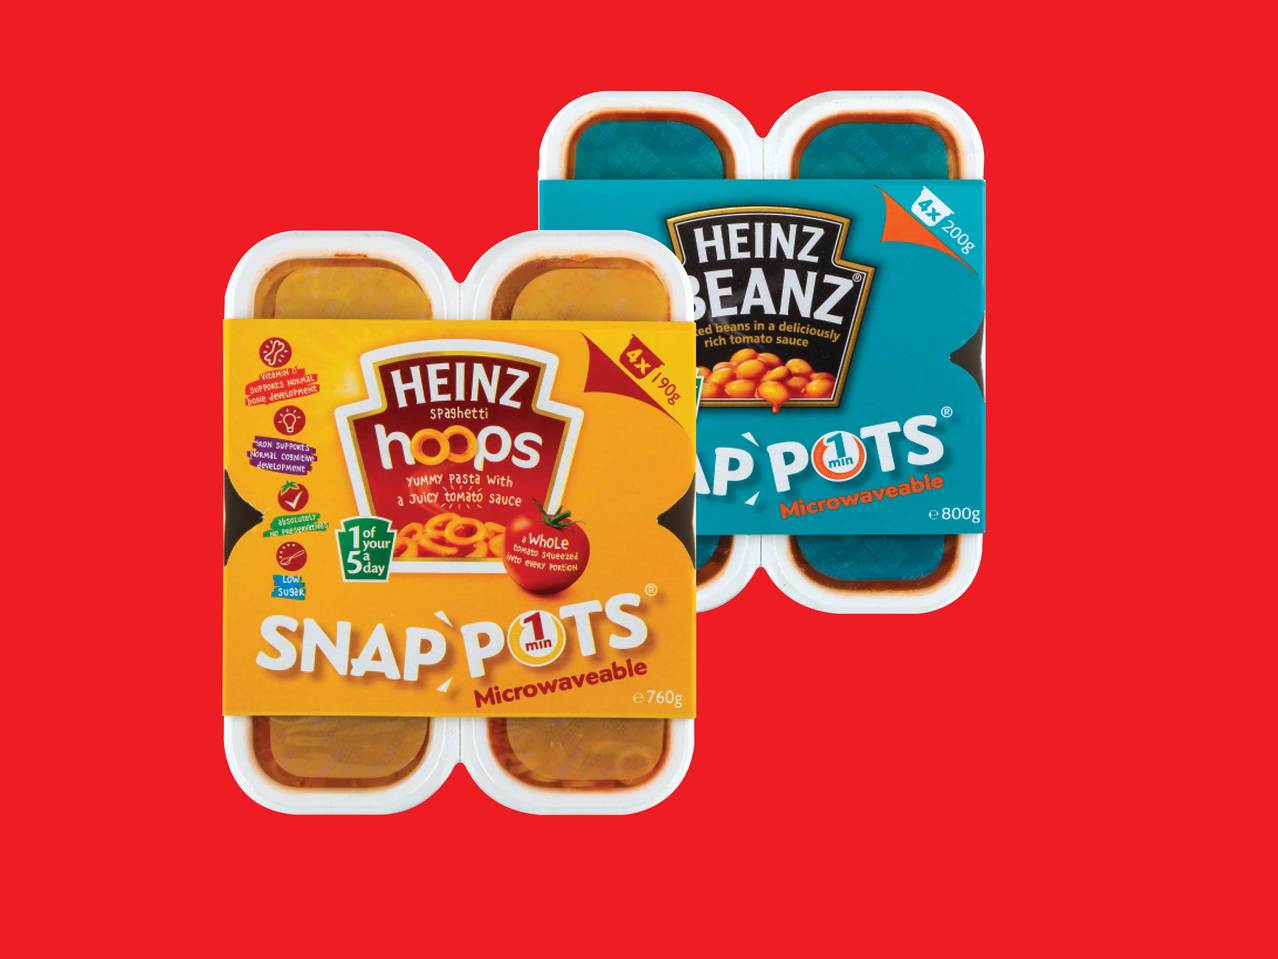 HEINZ(R) Hoops/Beanz Snap Pots